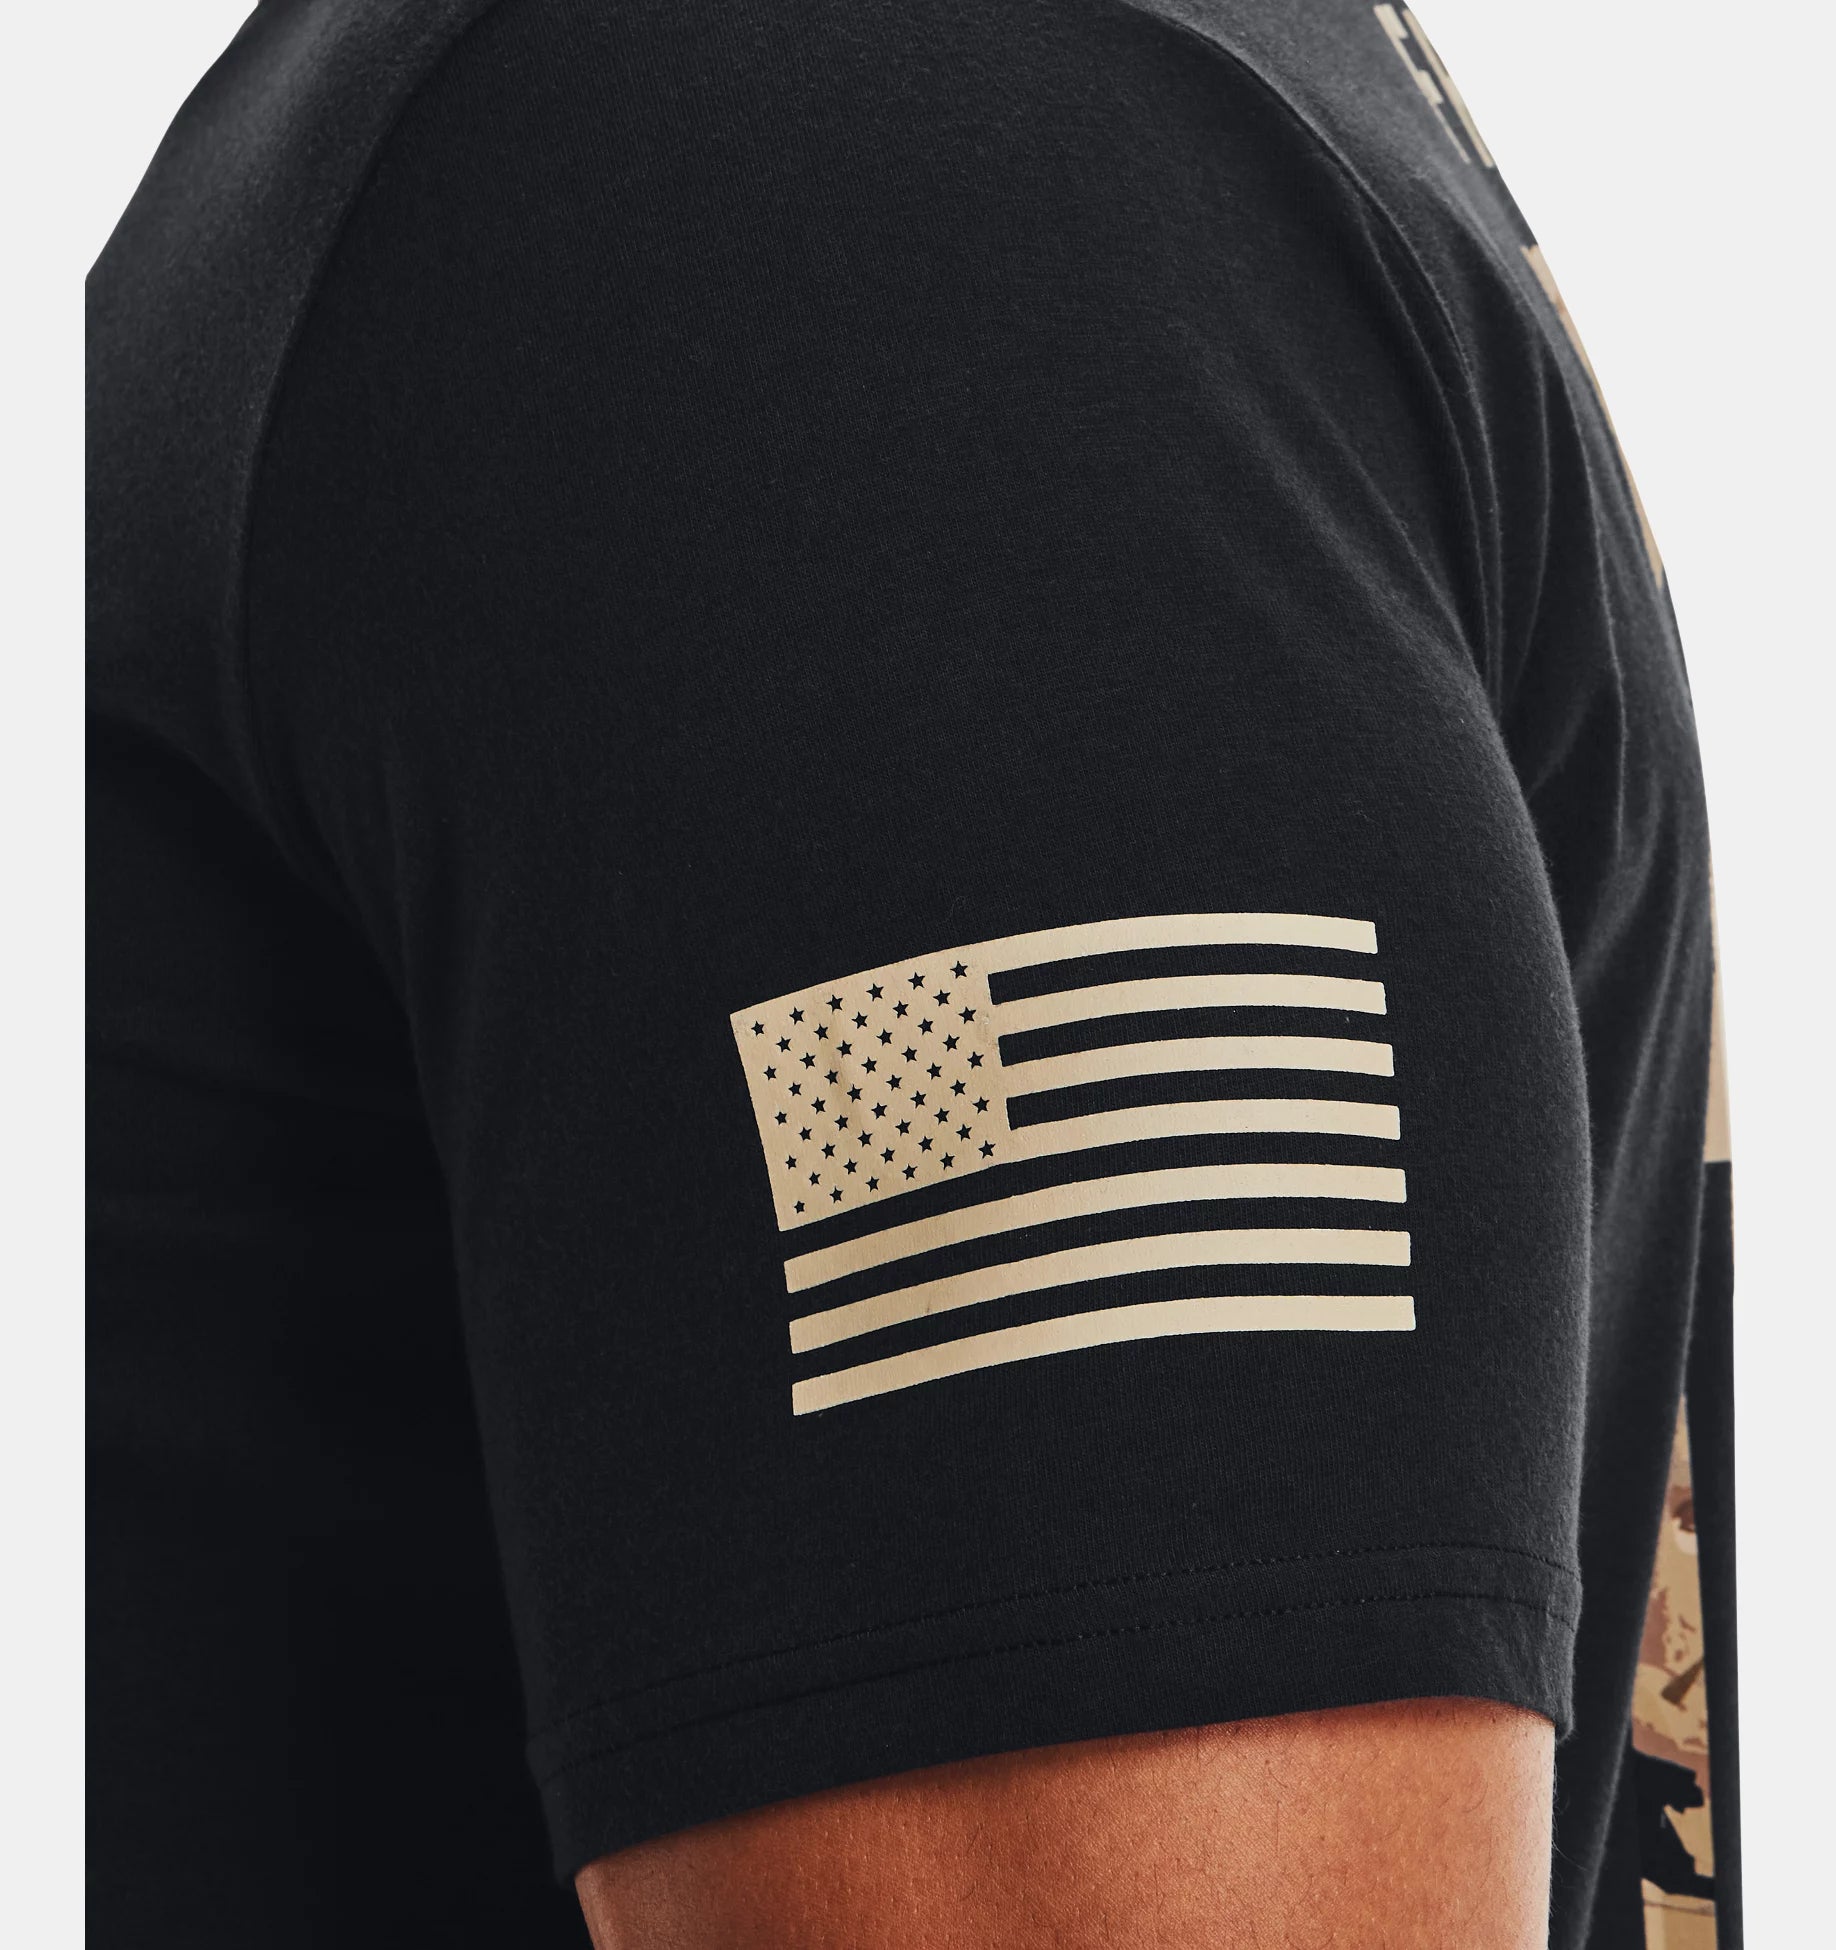 Under Armour UA Freedom Flag Camo T-Shirt 1370816 - T-Shirts